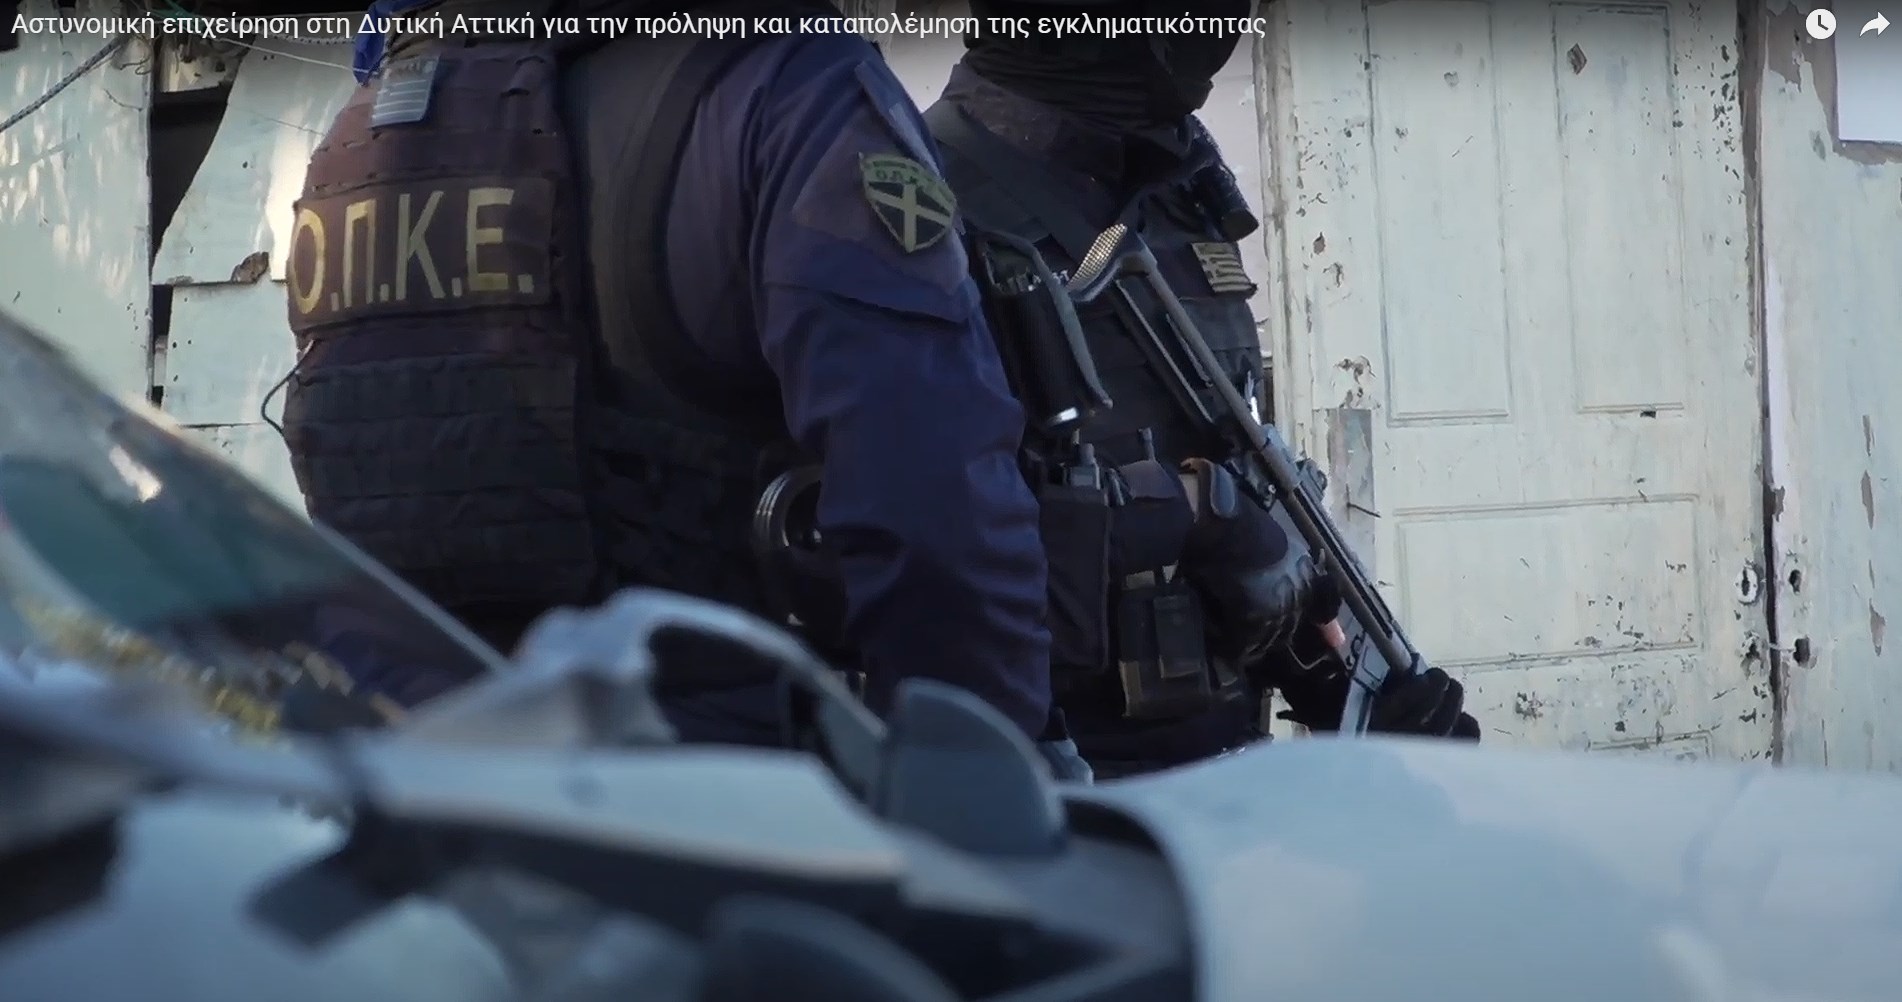 Δυτική Αττική: Εντοπίστηκε βλήμα όλμου κρυμμένο σε σπίτι, επτά συλλήψεις – Δείτε ΒΙΝΤΕΟ από την αστυνομική επιχείρηση